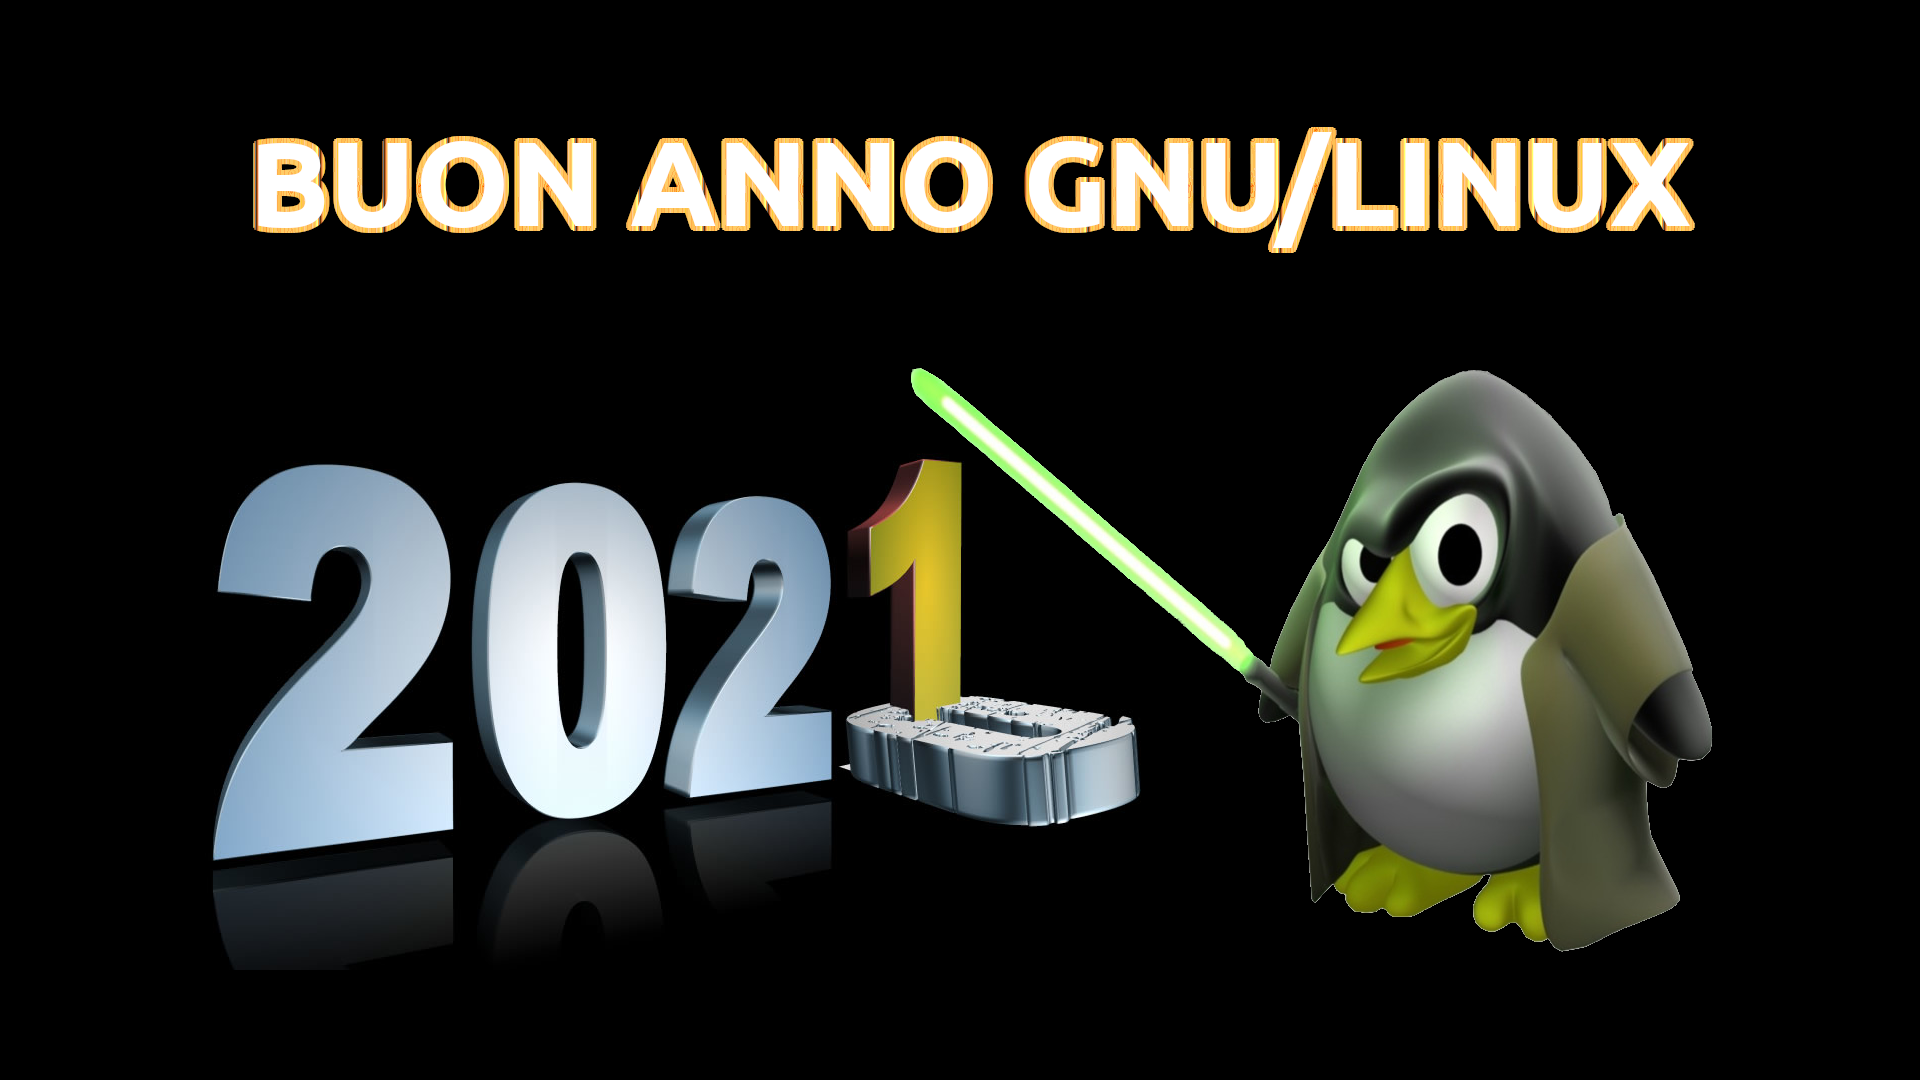 Buon Anno 2021 a tutti i pinguini GNU/Linux